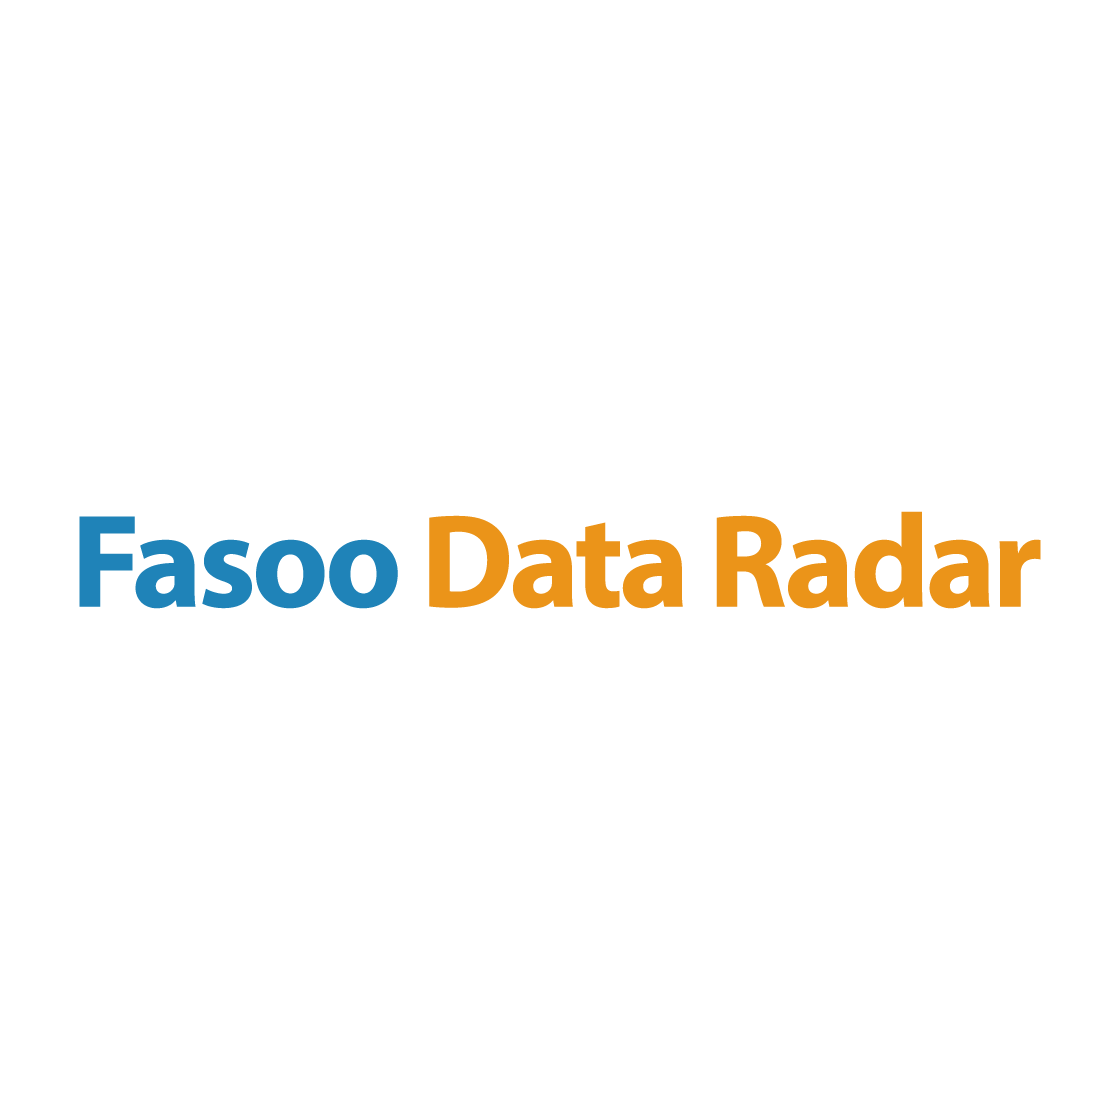 Fasoo Data Radar